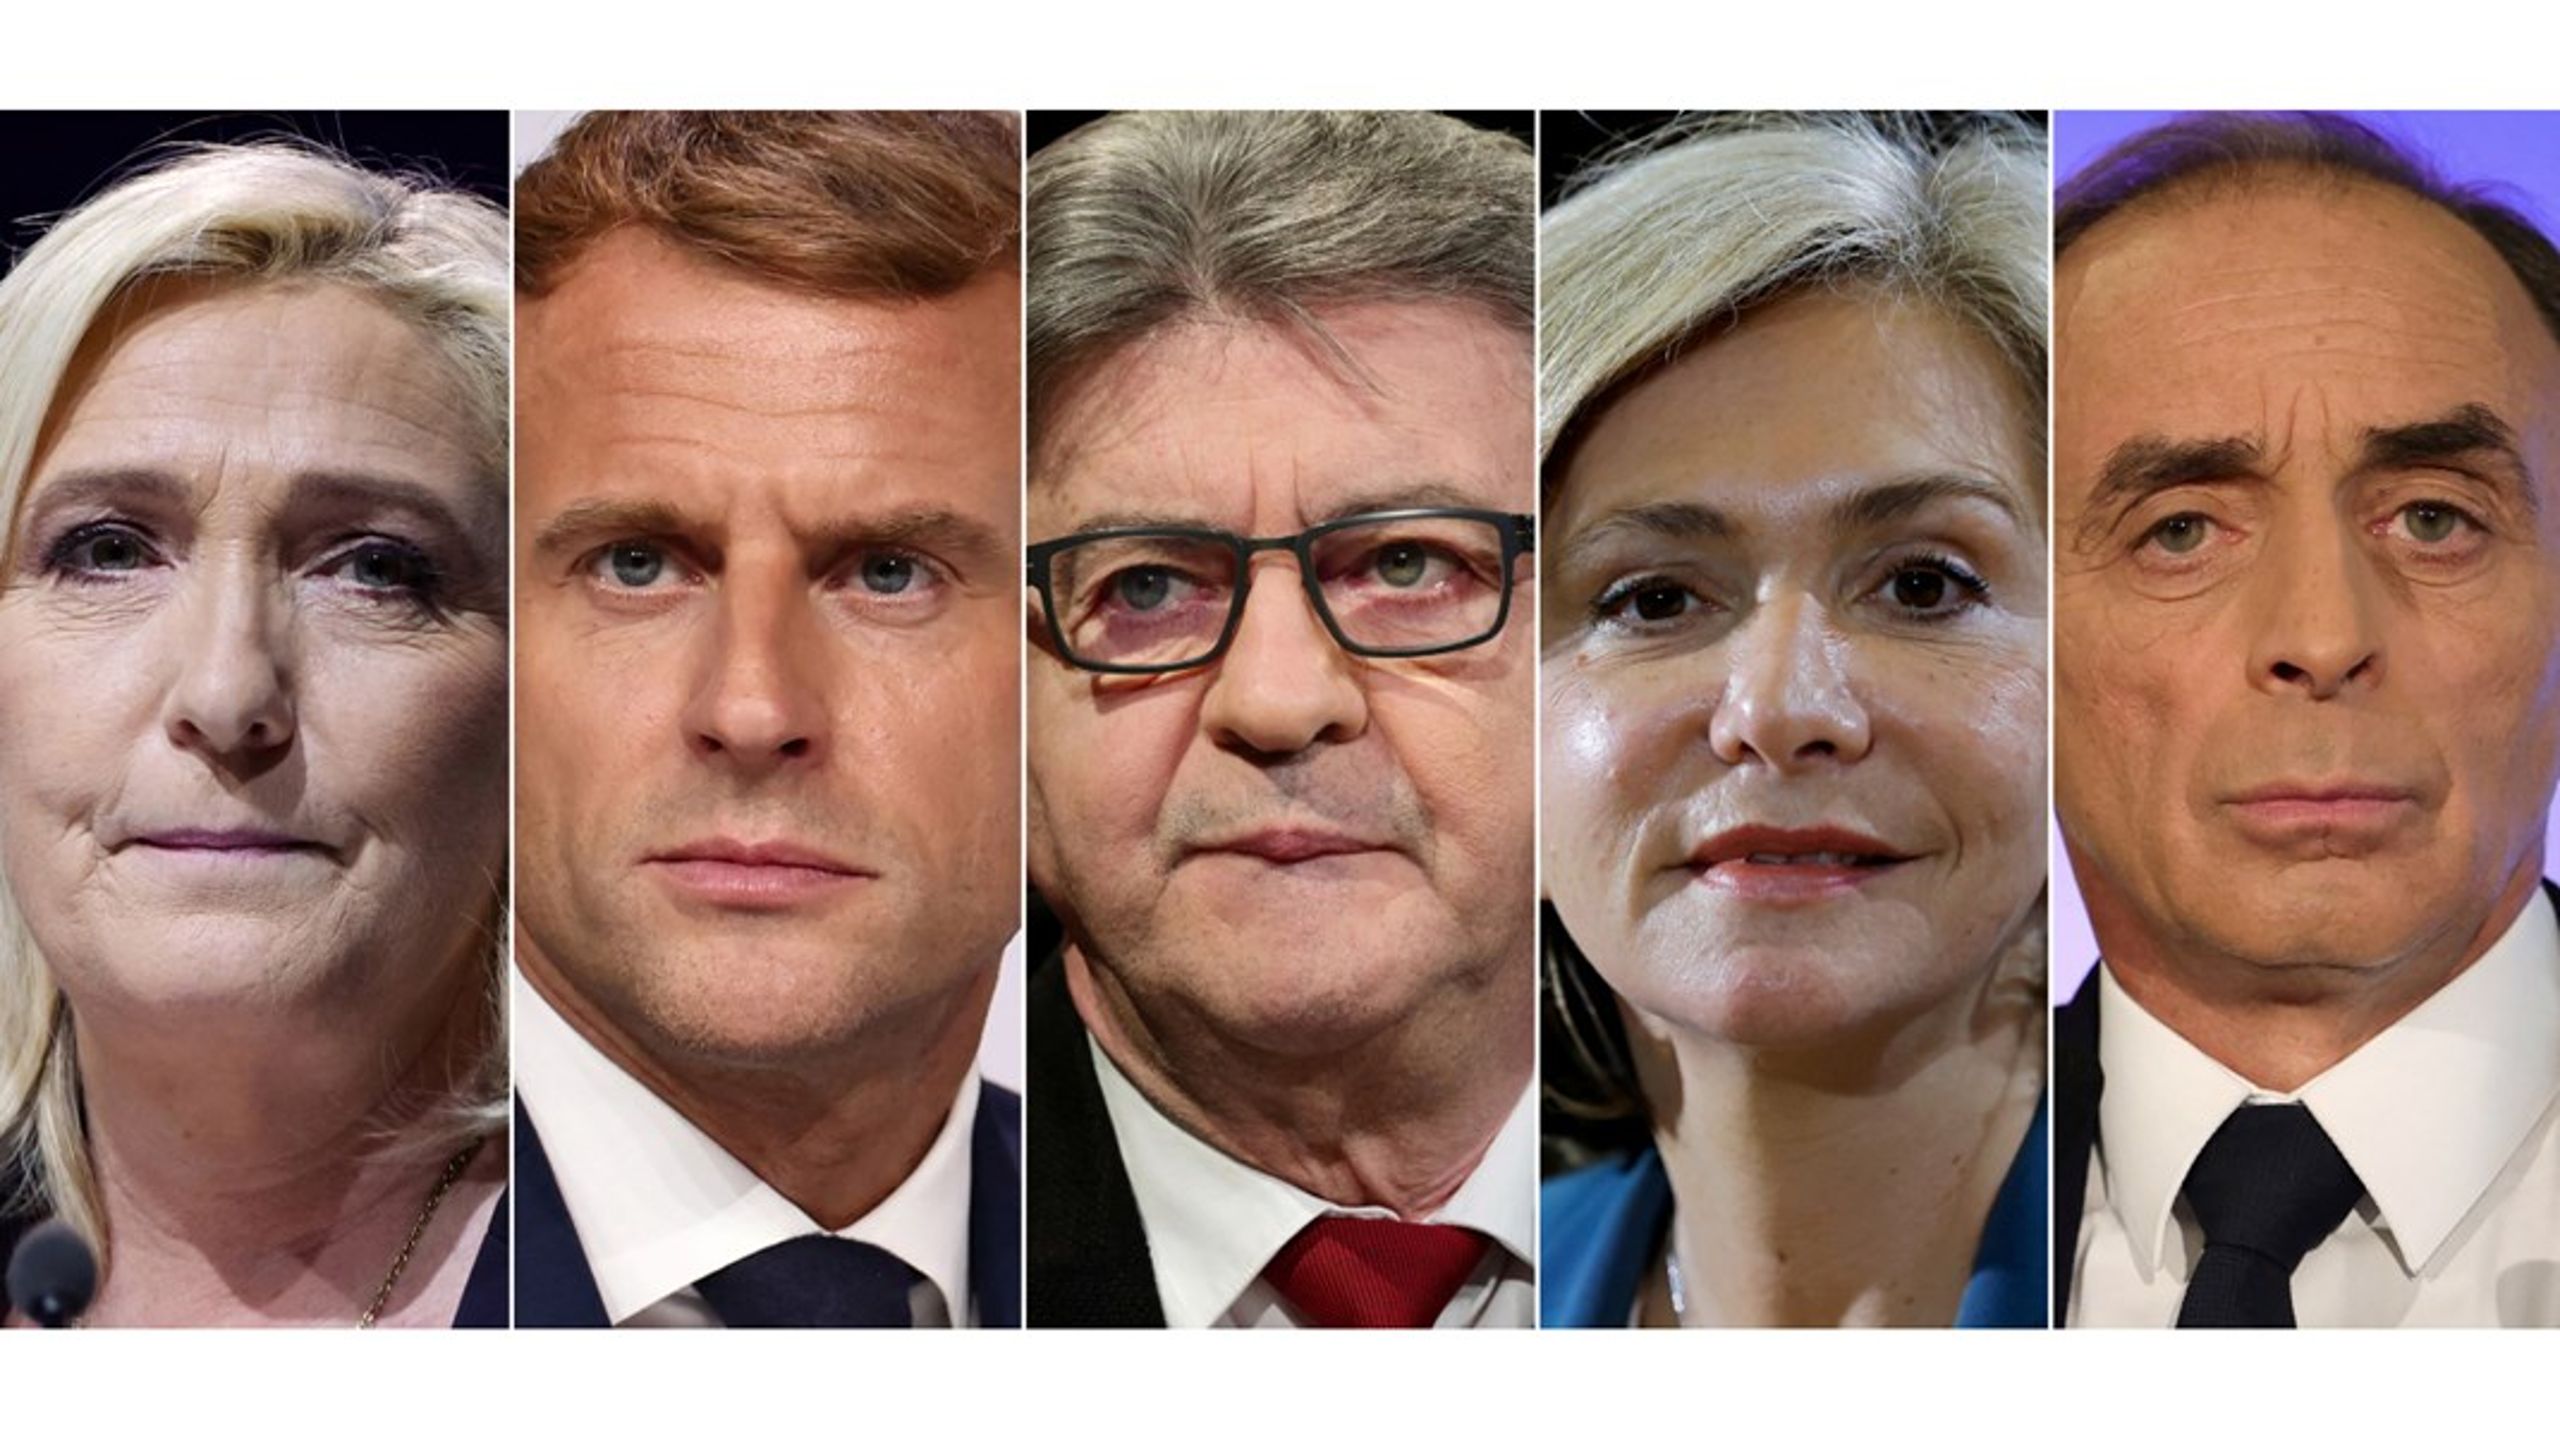 De fem førende kandidater (fra venstre): Marine Le Pen, Emmanuel Macron, Jean-Luc Mélenchon, Valérie Pécresse og Eric Zemmour.<br>